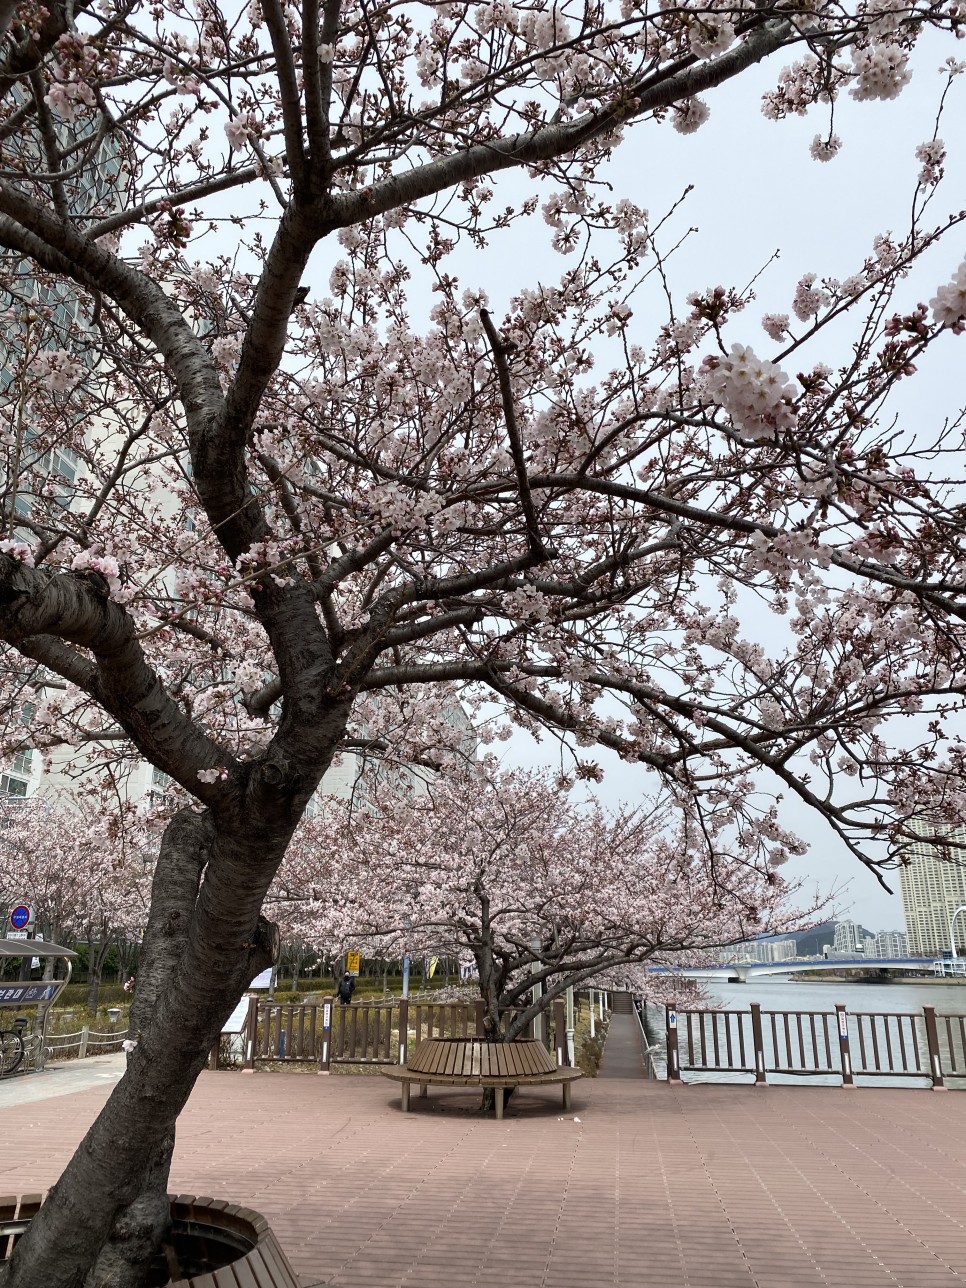 부산 벚꽃시즌 봄 꽃구경하기 좋은 장소들